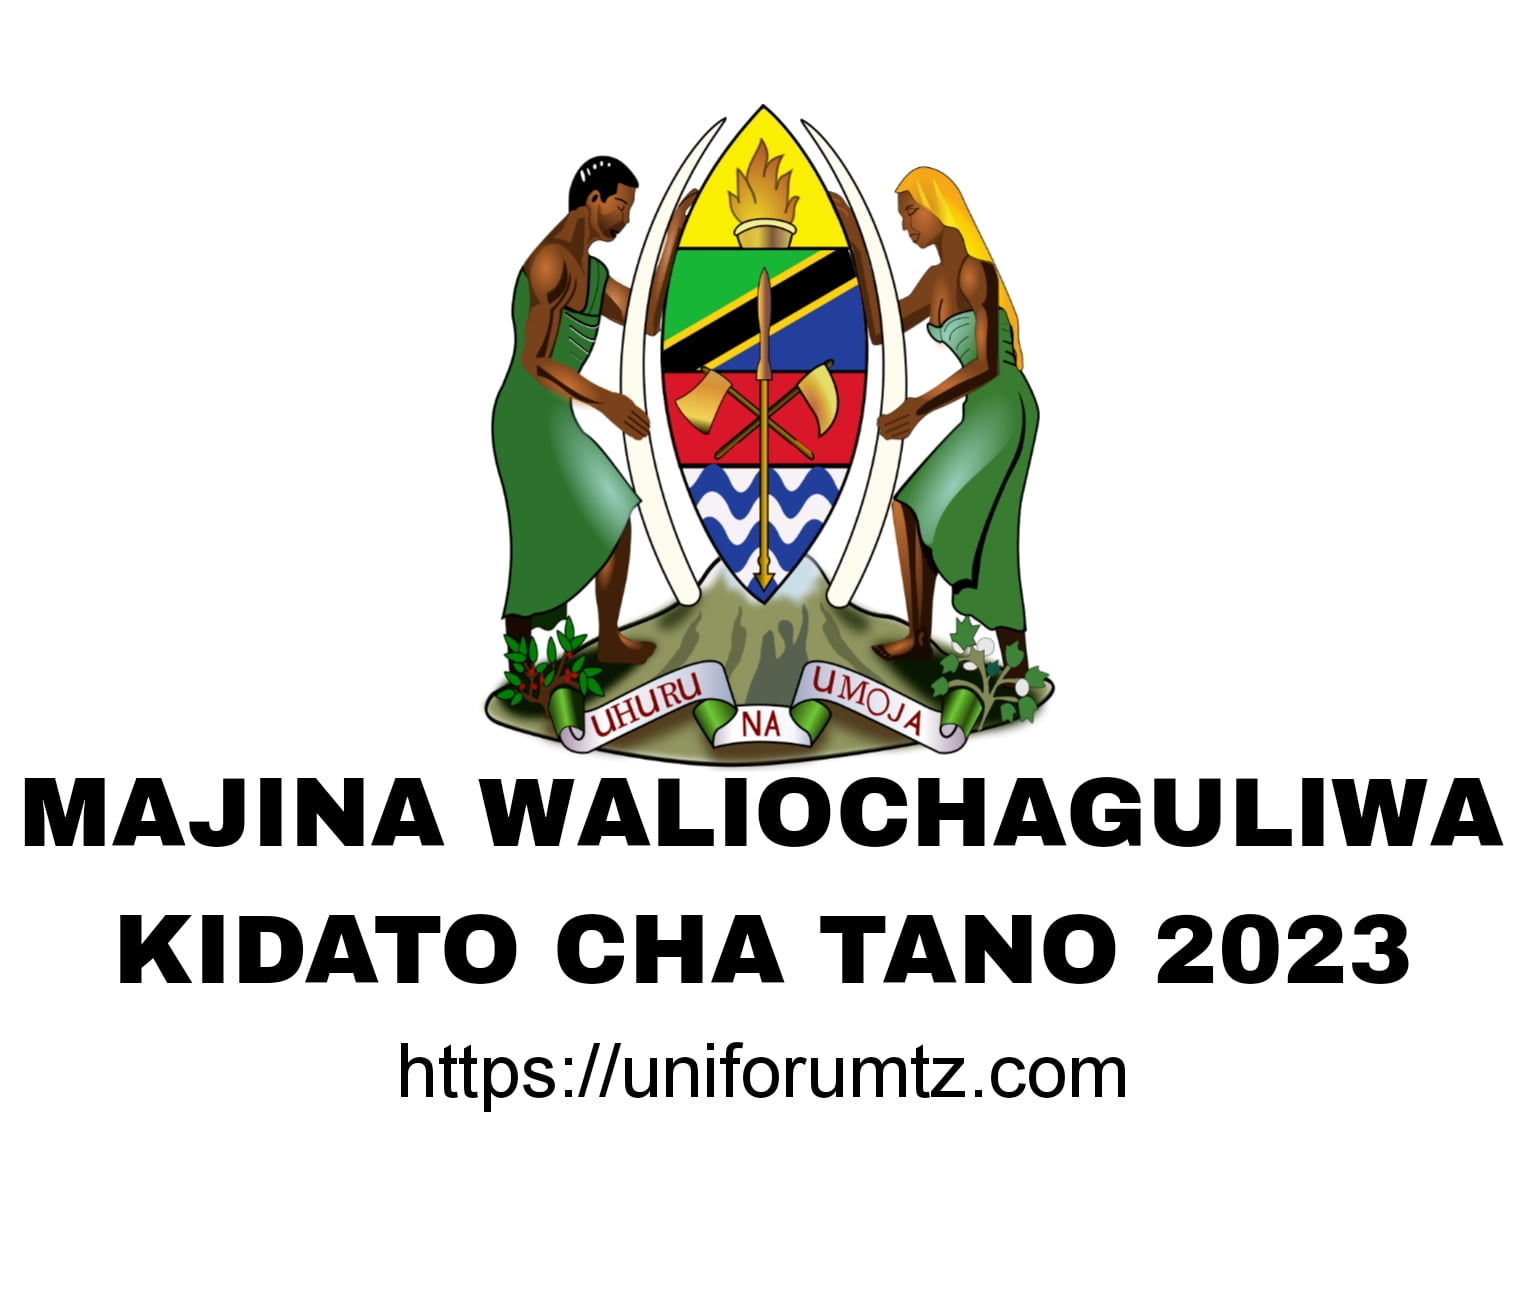 Majina Waliochaguliwa Kidato Cha Tano 2023